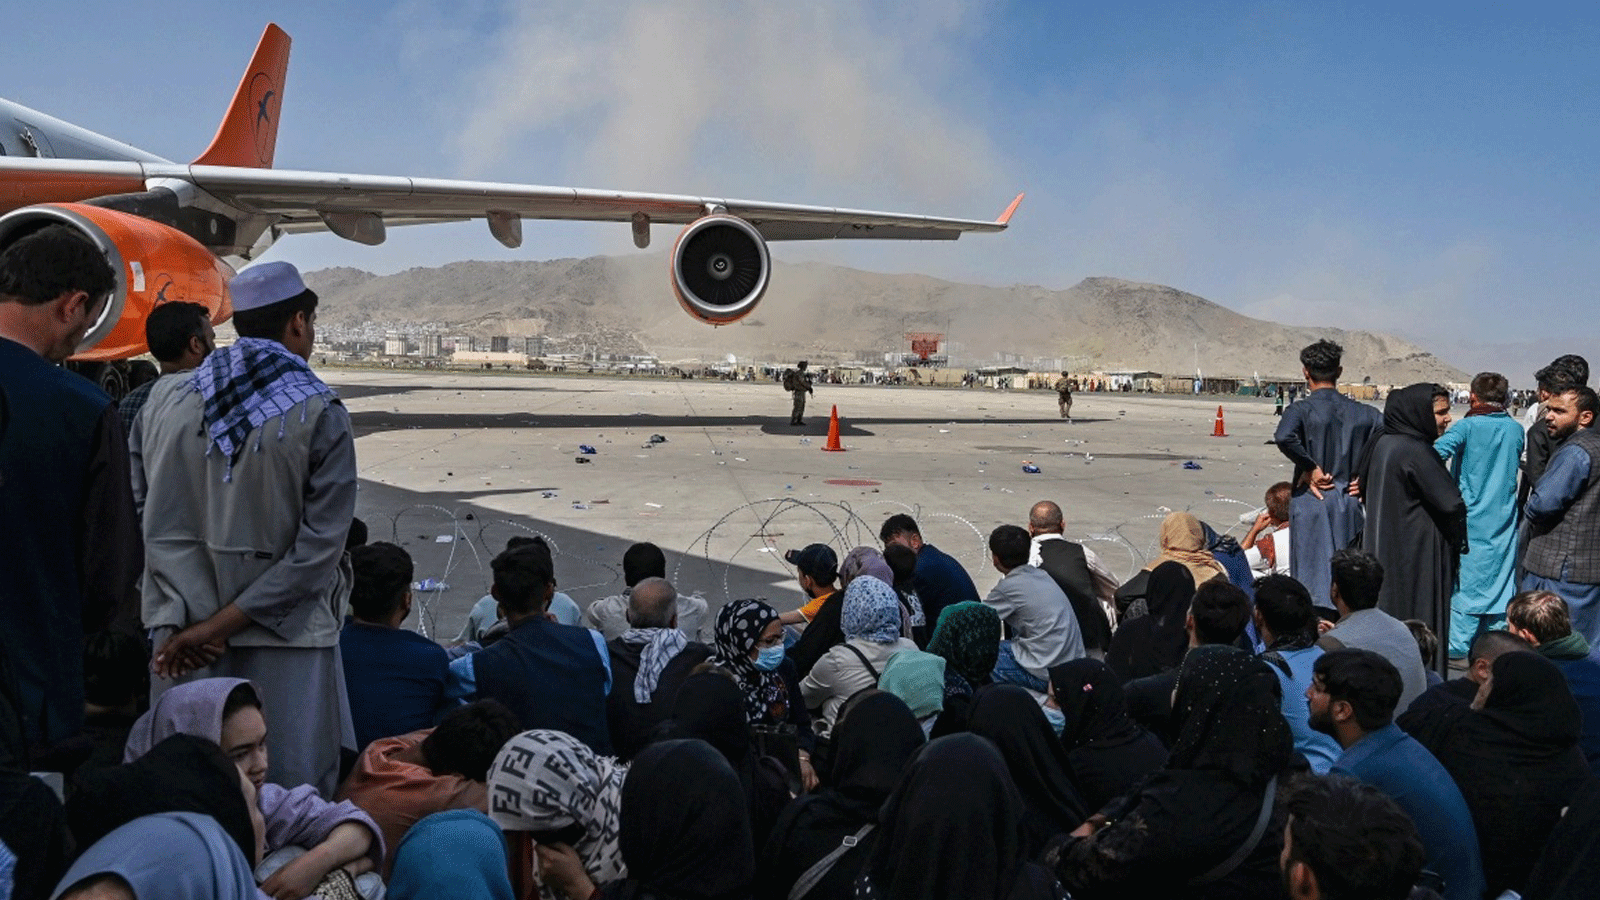 أفغانيون يجلسون في انتظار مغادرة مطار كابول بعد أن احتشد الآلاف في المنشأة محاولين الفرار من حكم طالبان